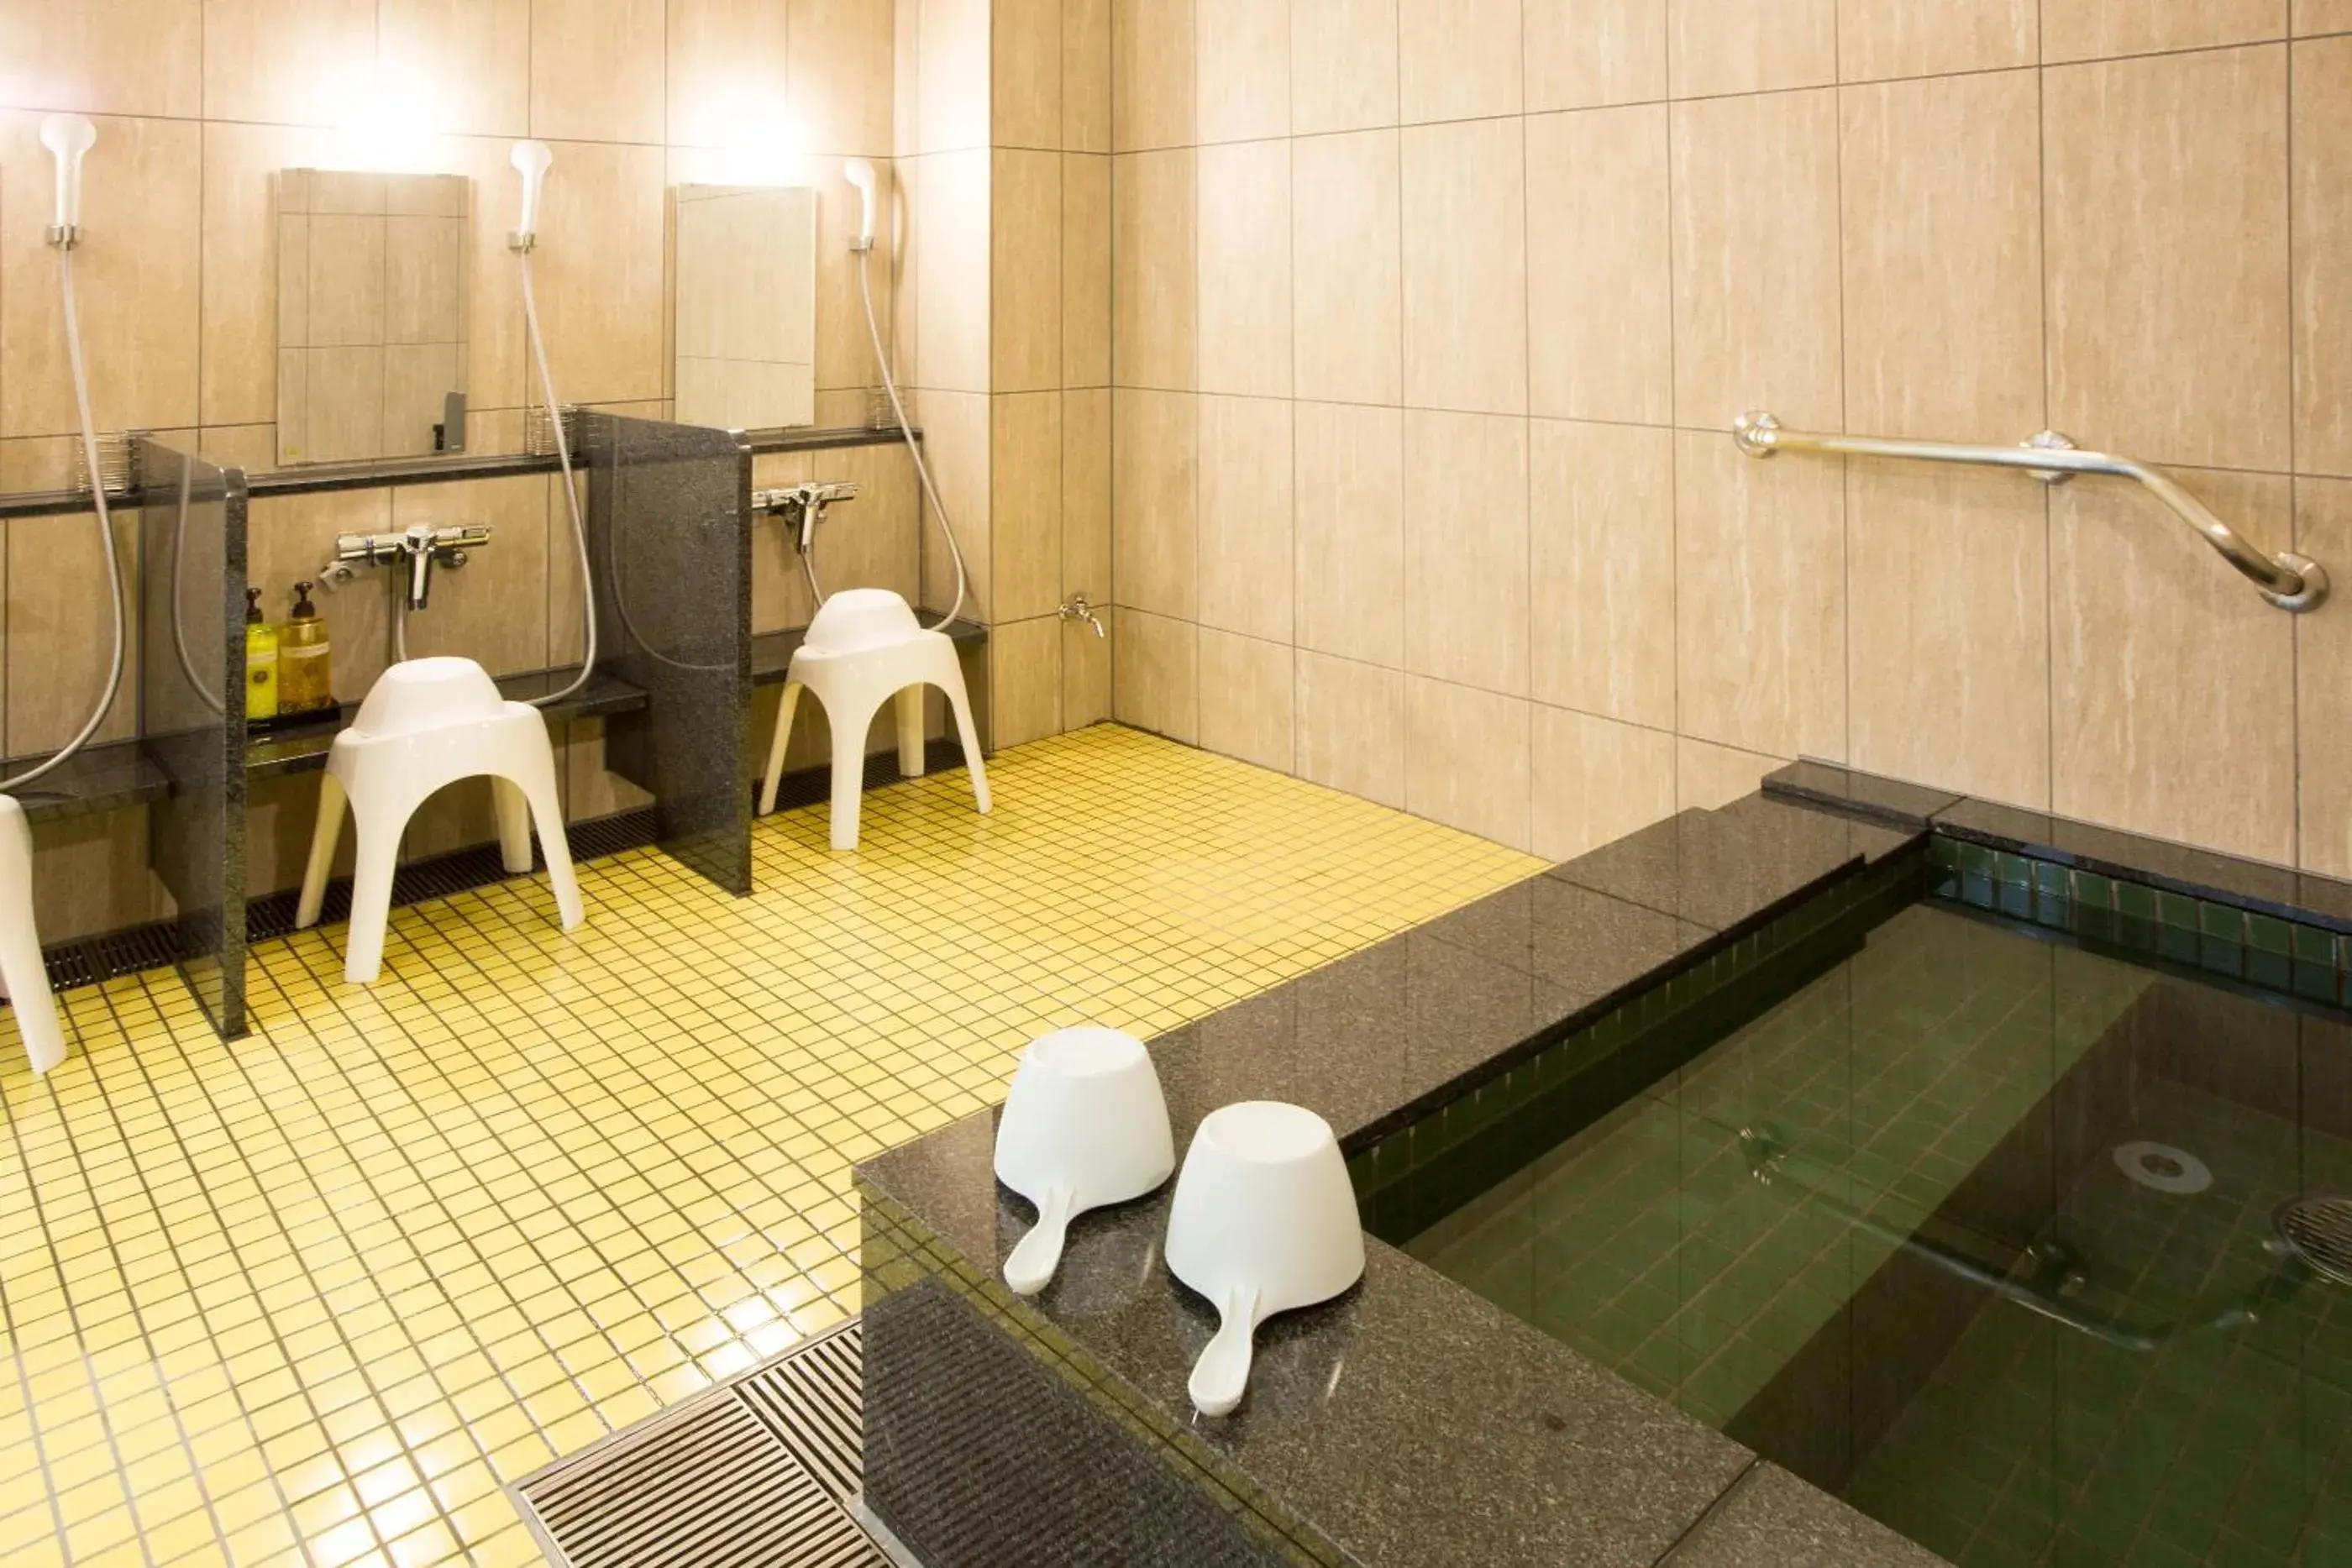 Public Bath, Bathroom in Kyonoyado Kiyomizu Gojo Kuretakeso